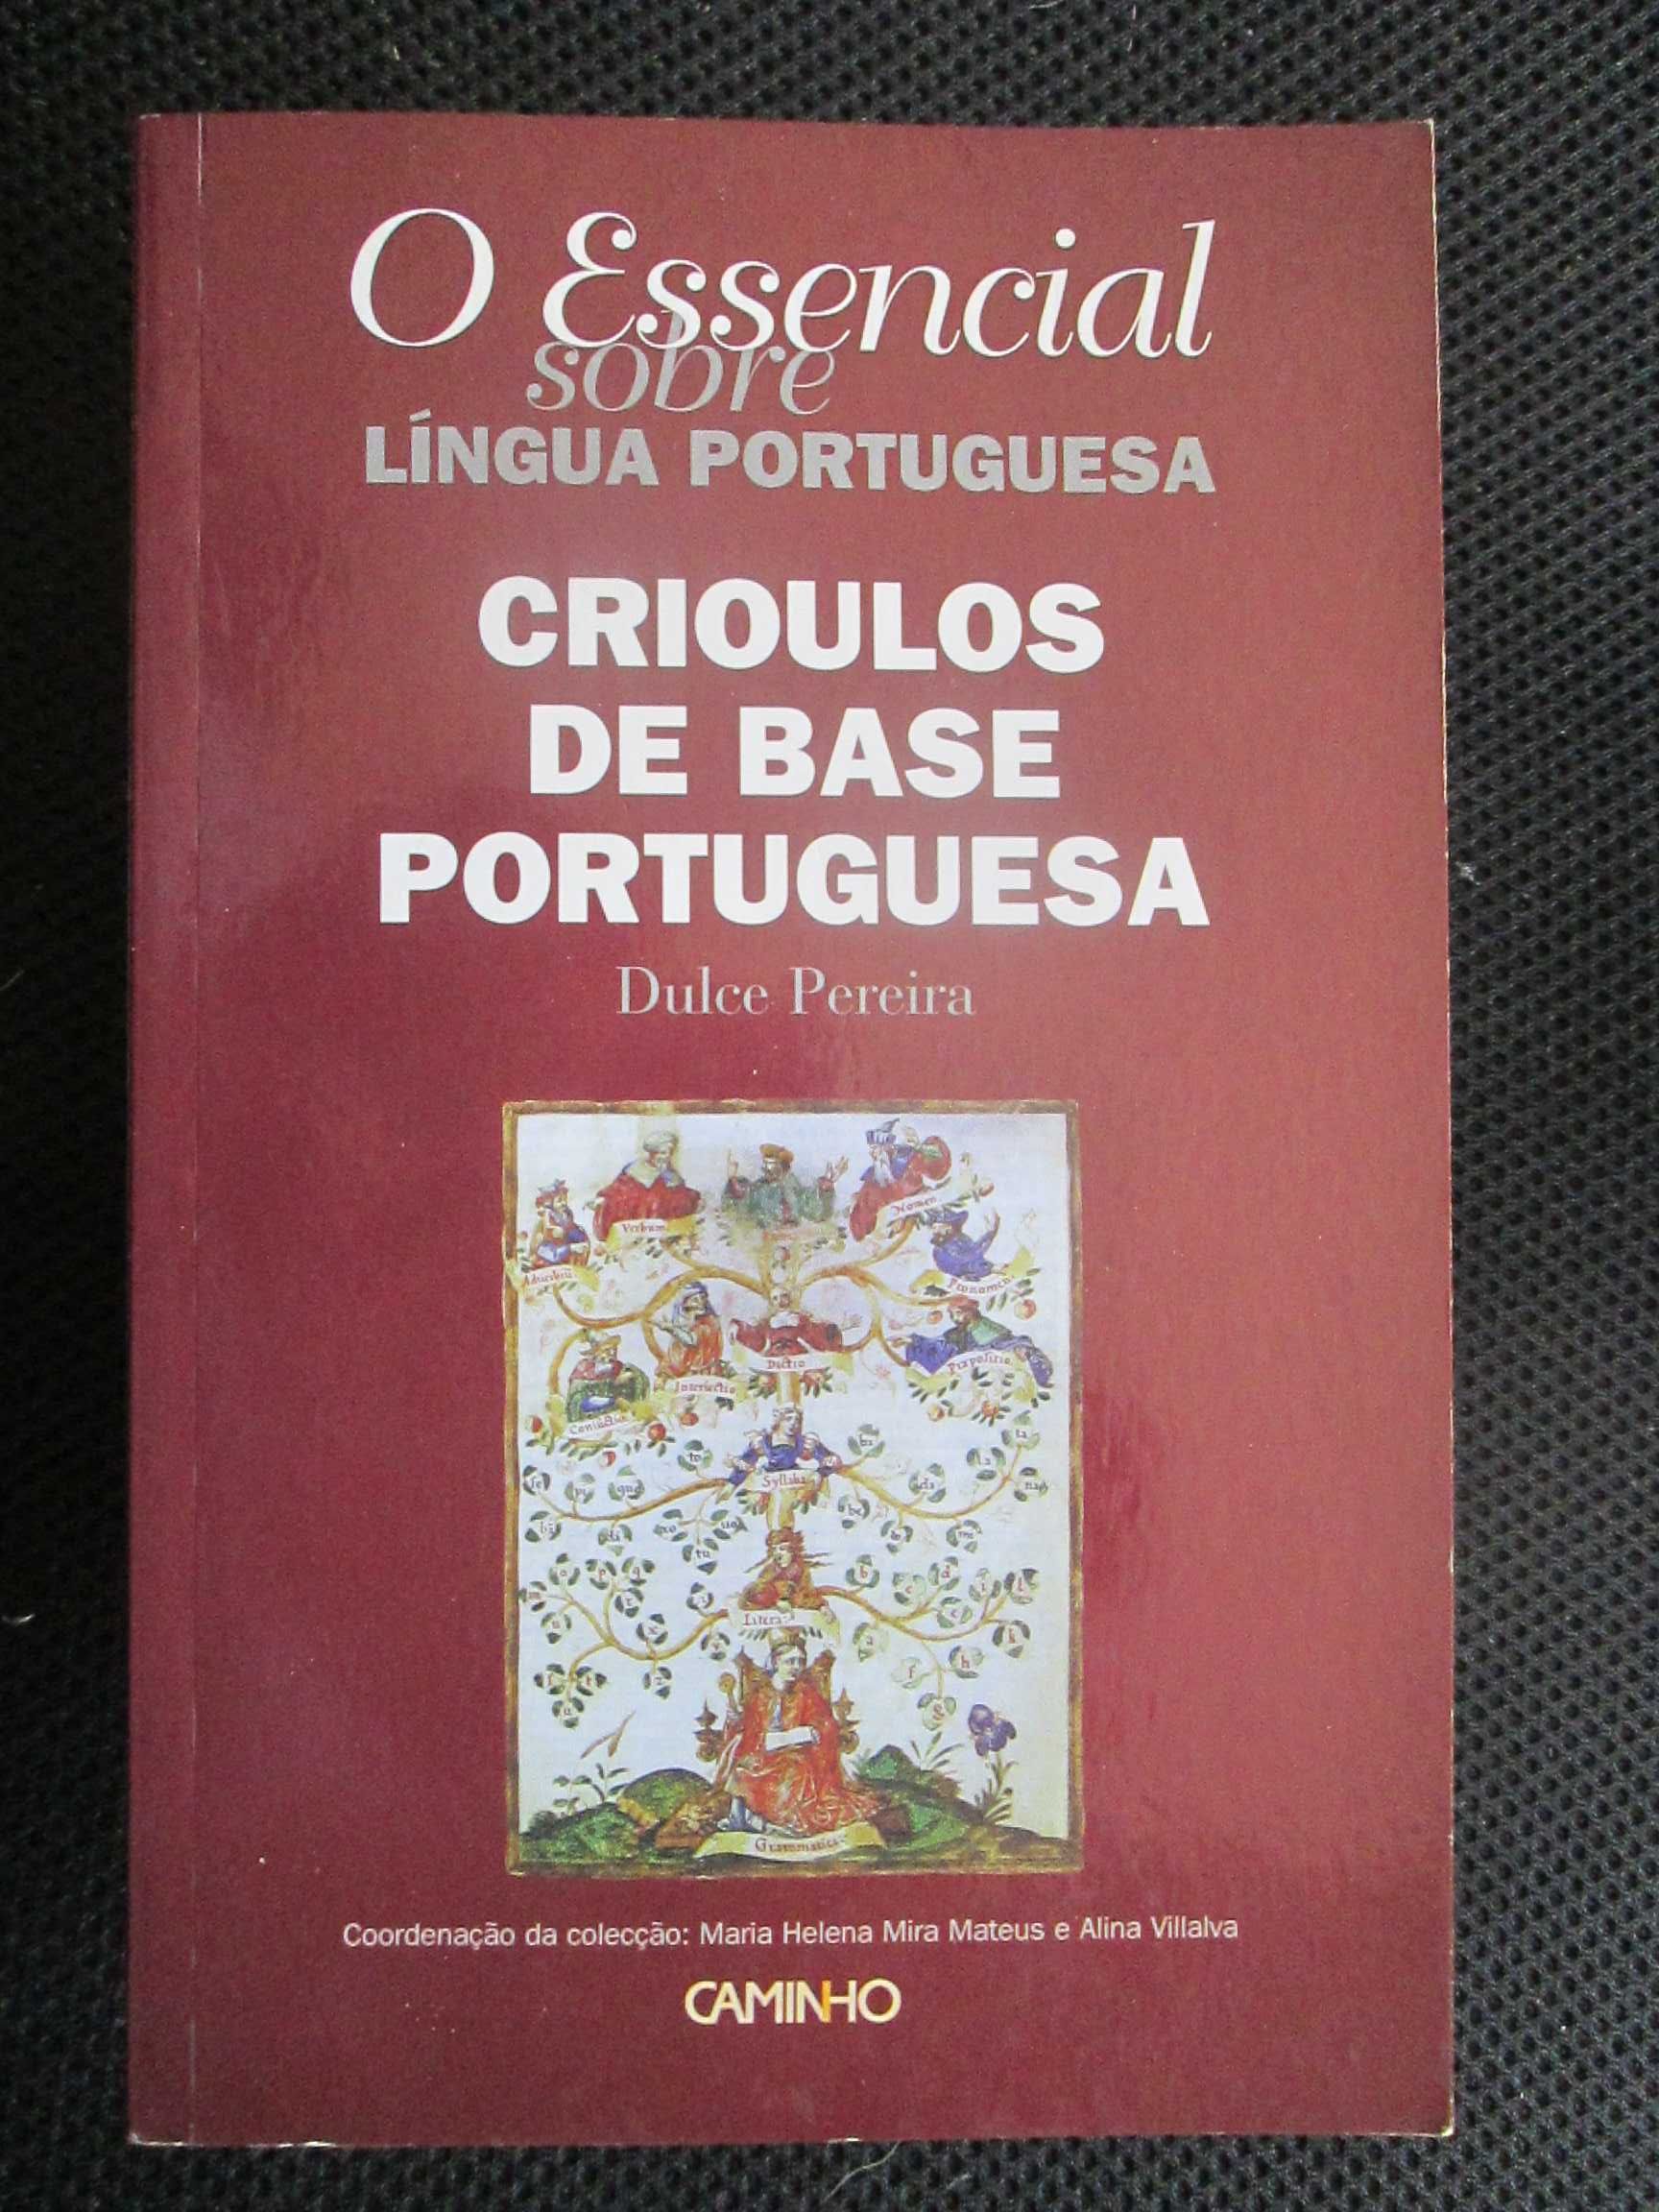 O Essencial Sobre Crioulos de Base Portuguesa, de Dulce Pereira